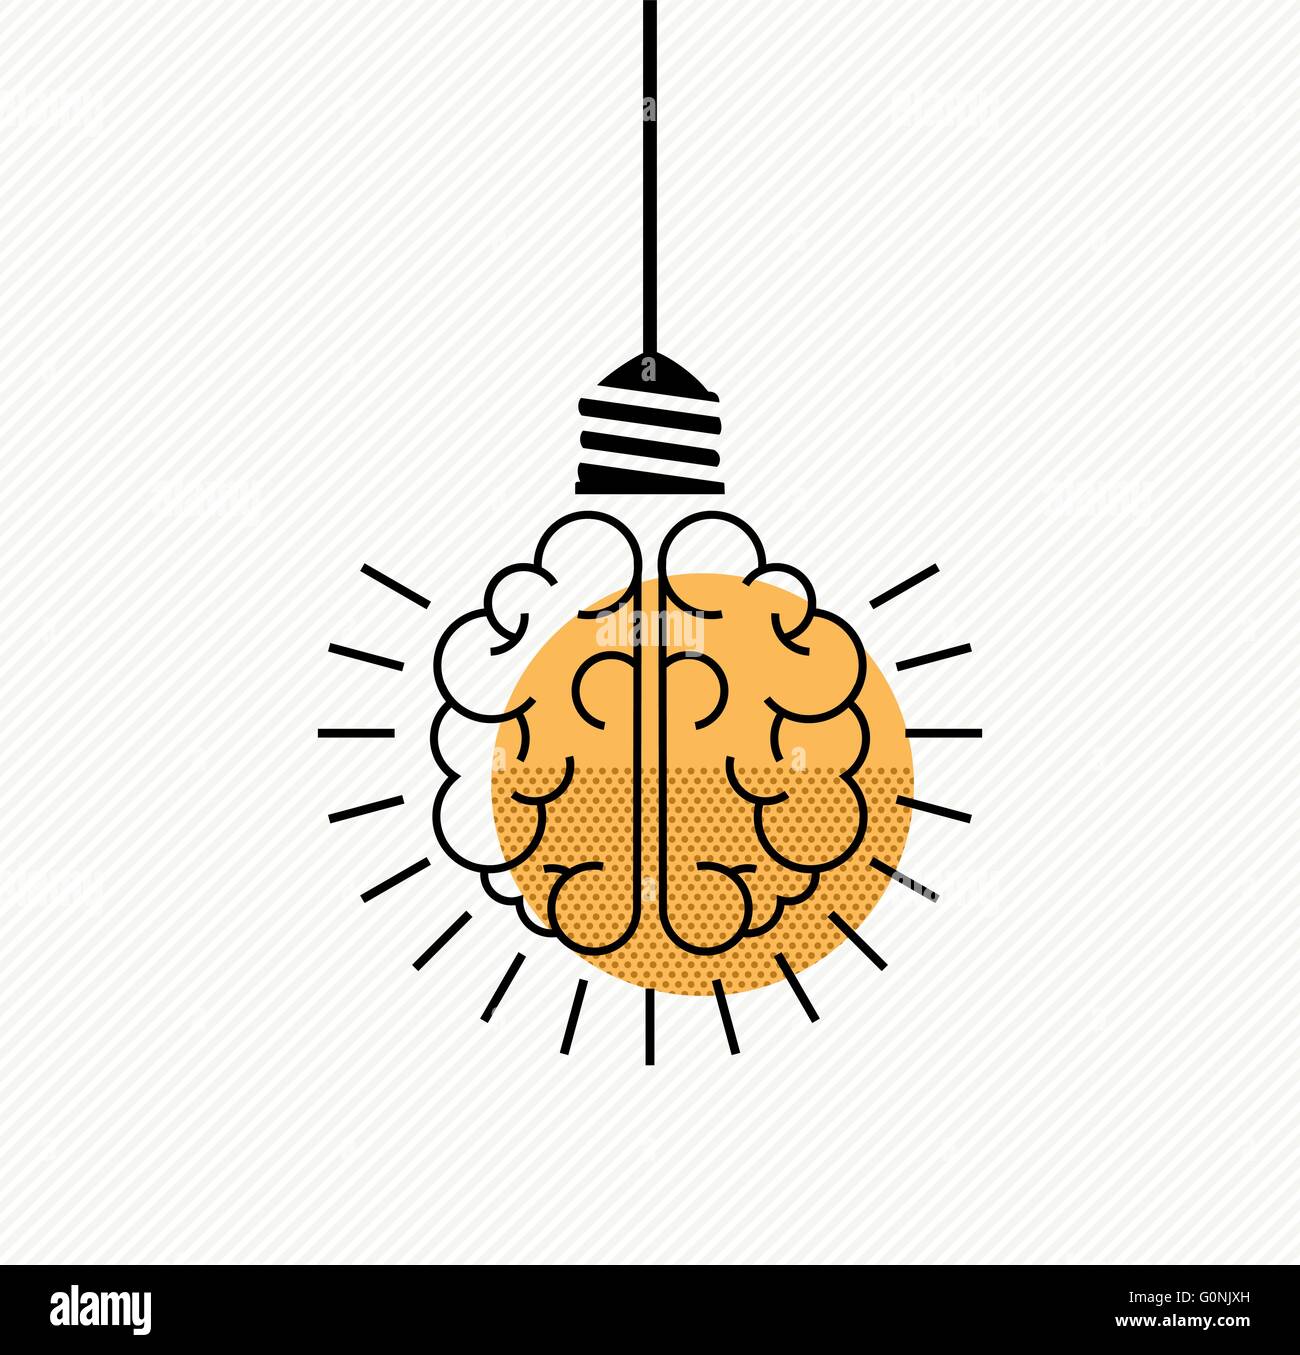 Idées de concept simple design. Cerveau humain comme ampoule lampe dans l'art de la ligne moderne style. Vecteur EPS10. Illustration de Vecteur